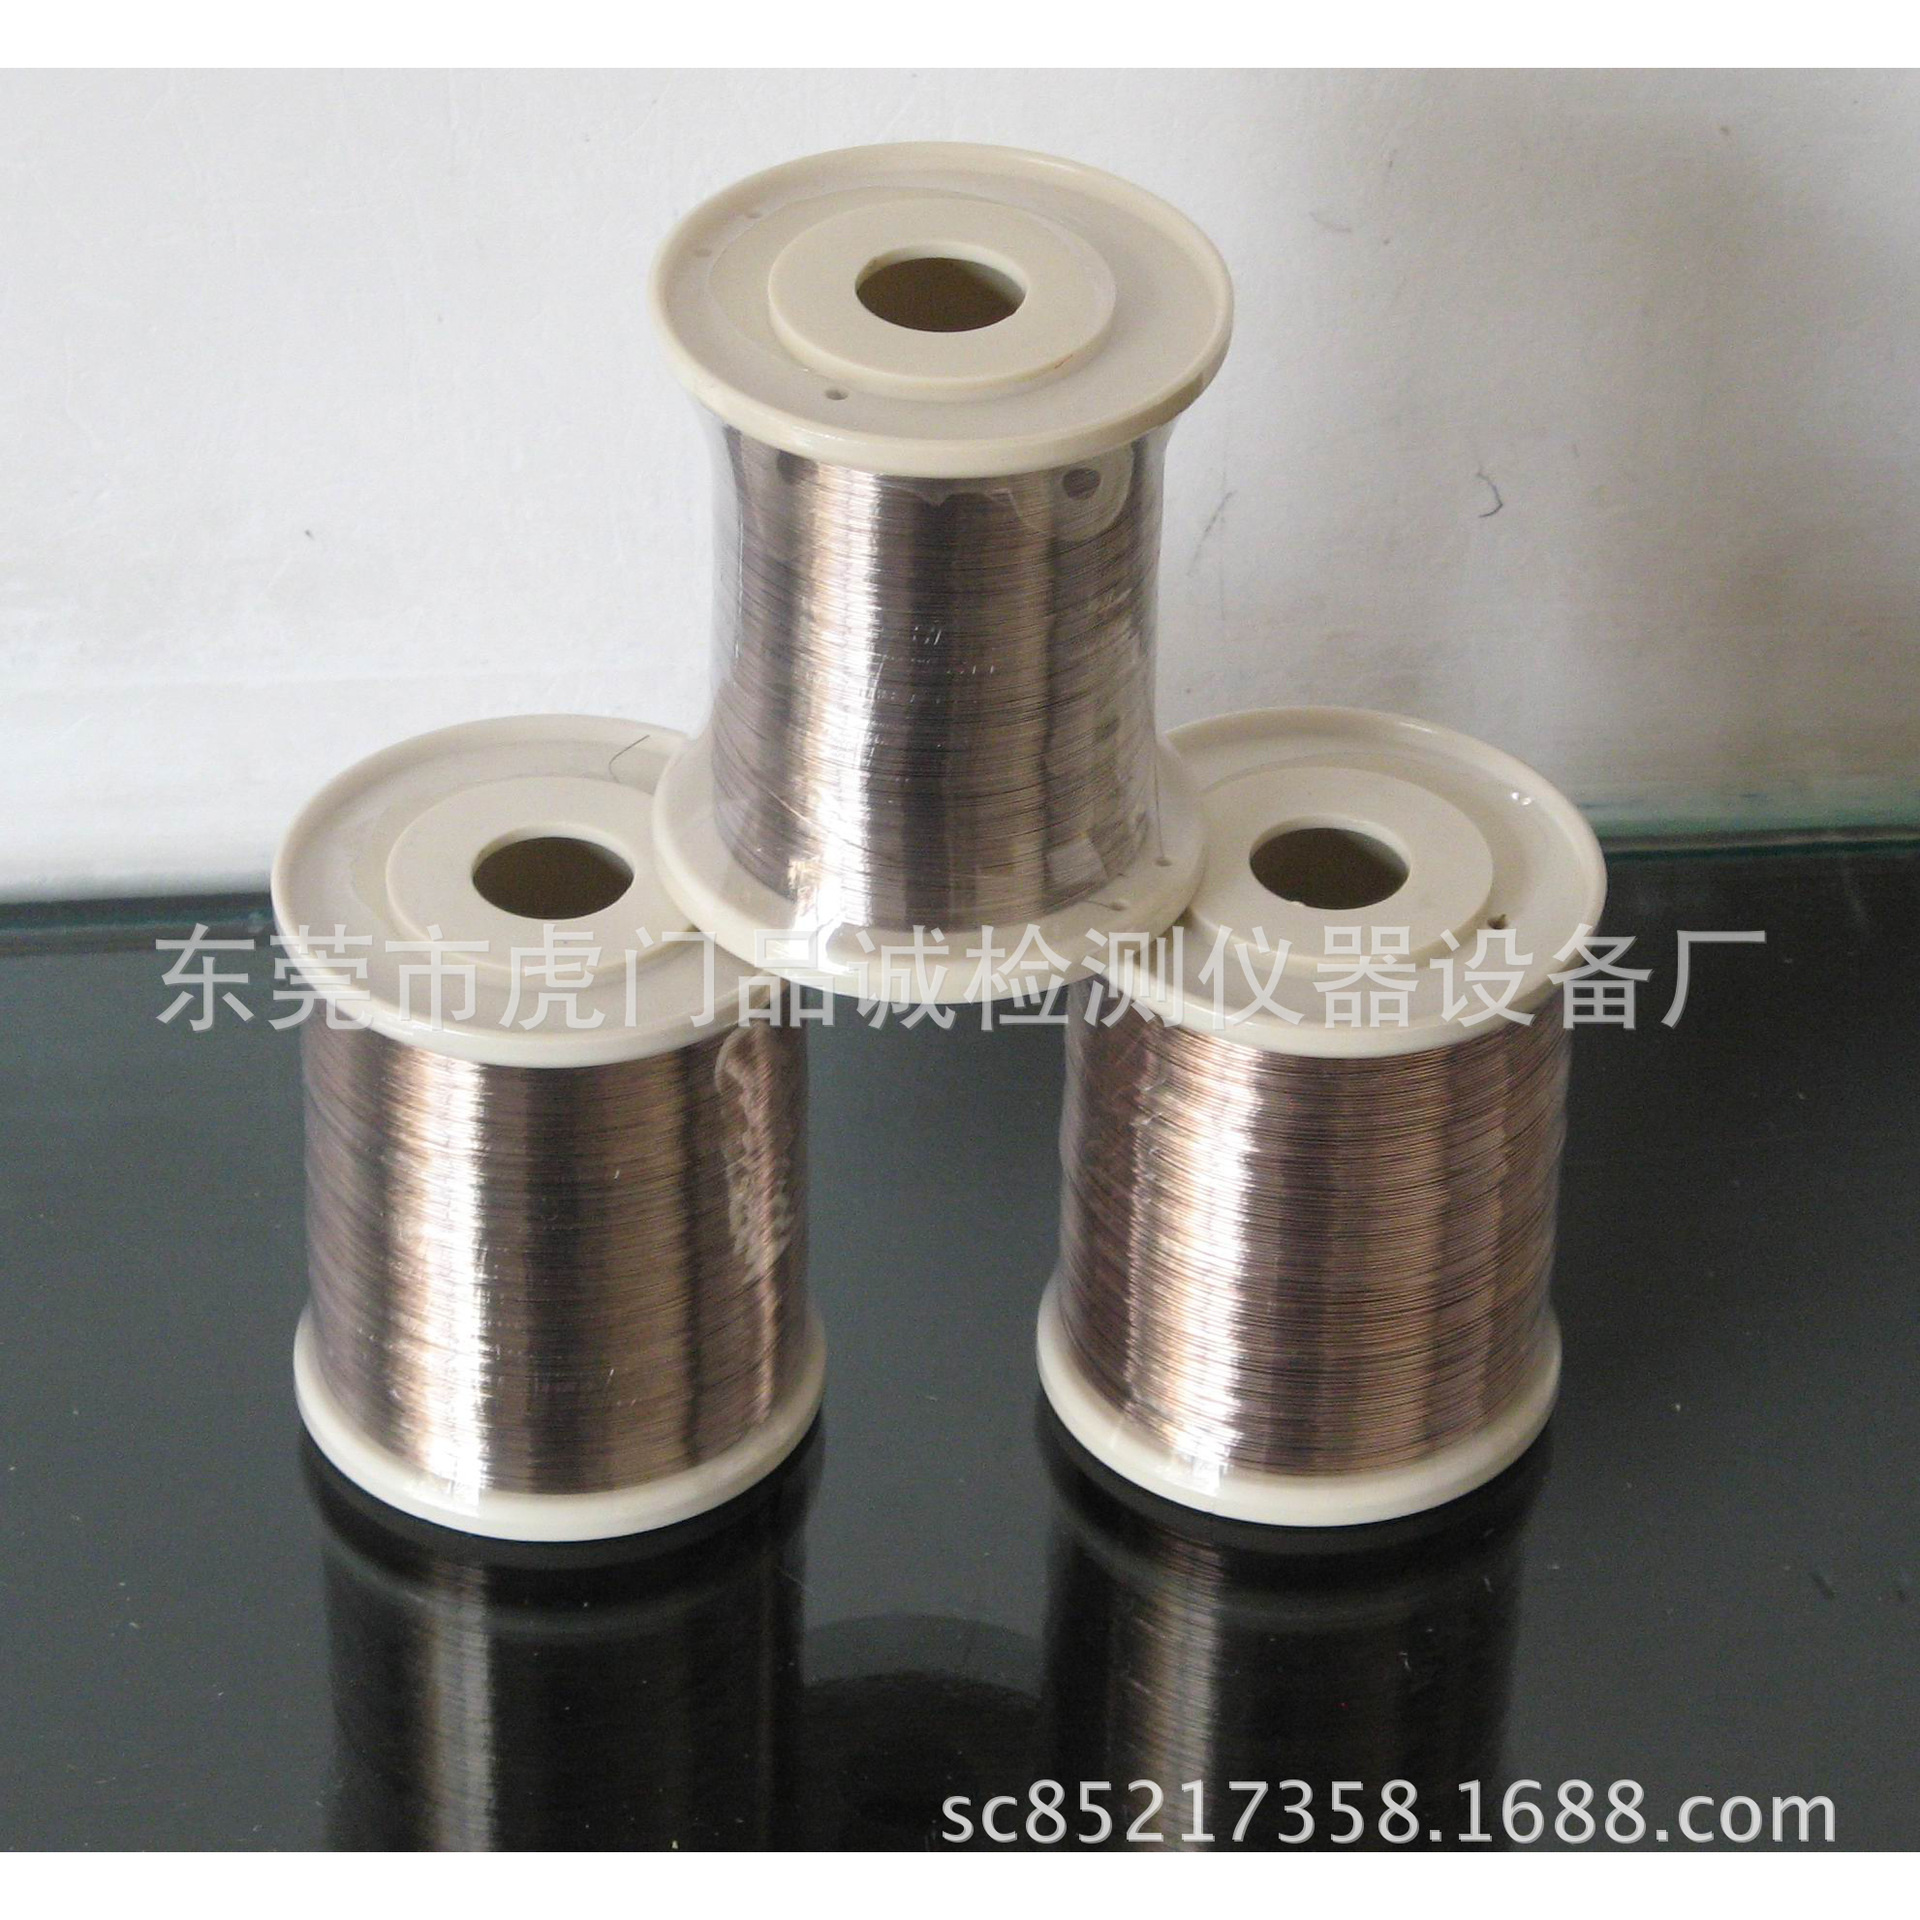 铜丝焊接用银焊丝生产厂家示例图4